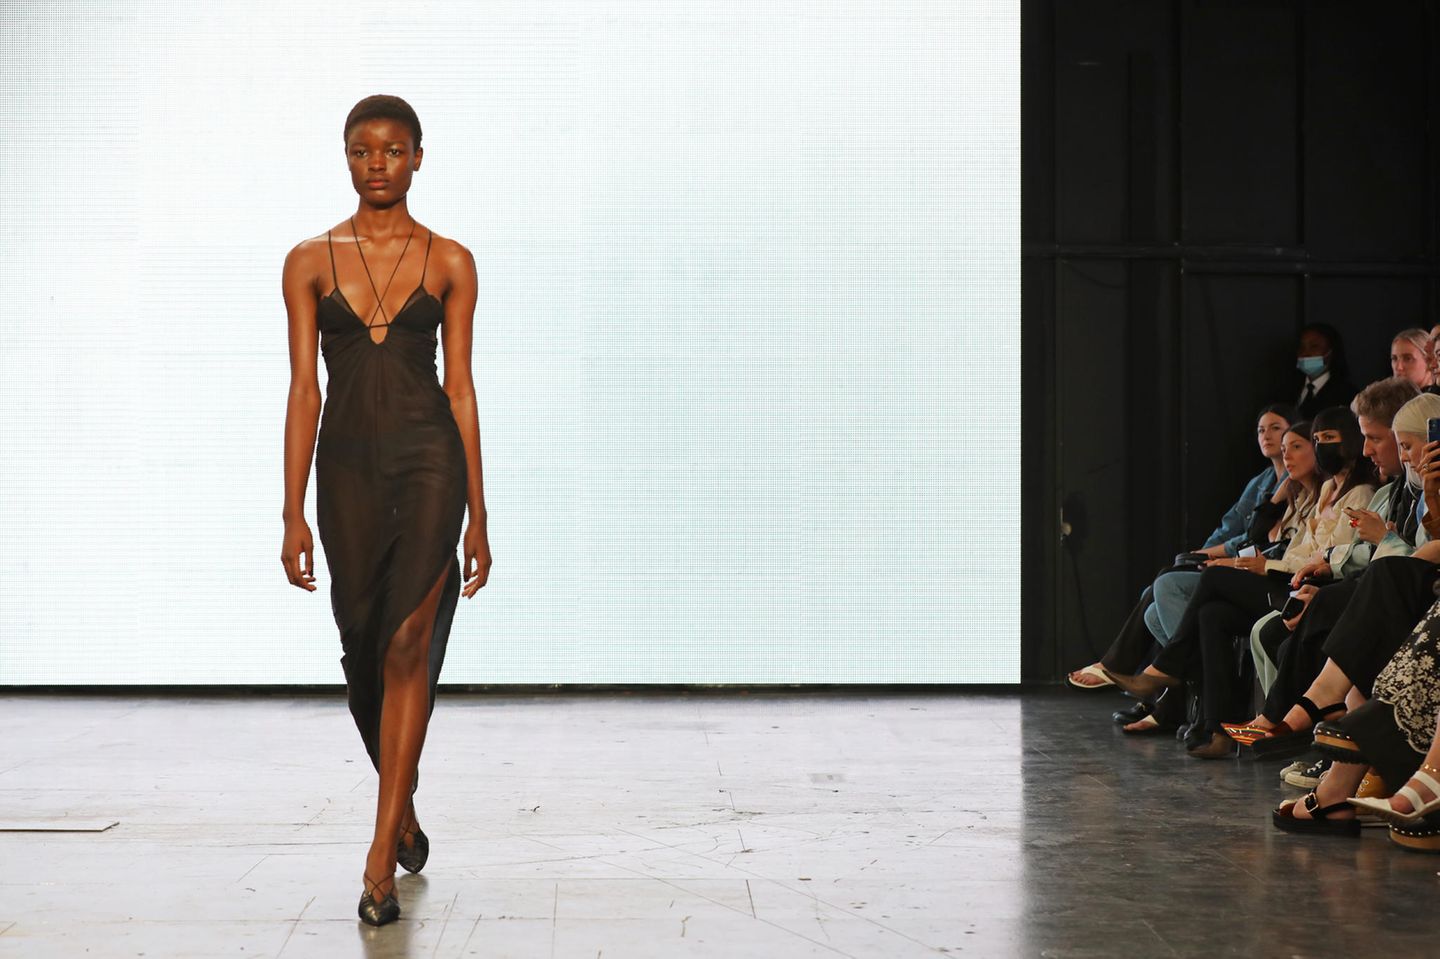 Das Label Nensi Dojaka präsentiert den Naked Trend auf der Londoner Fashion Week 2021.